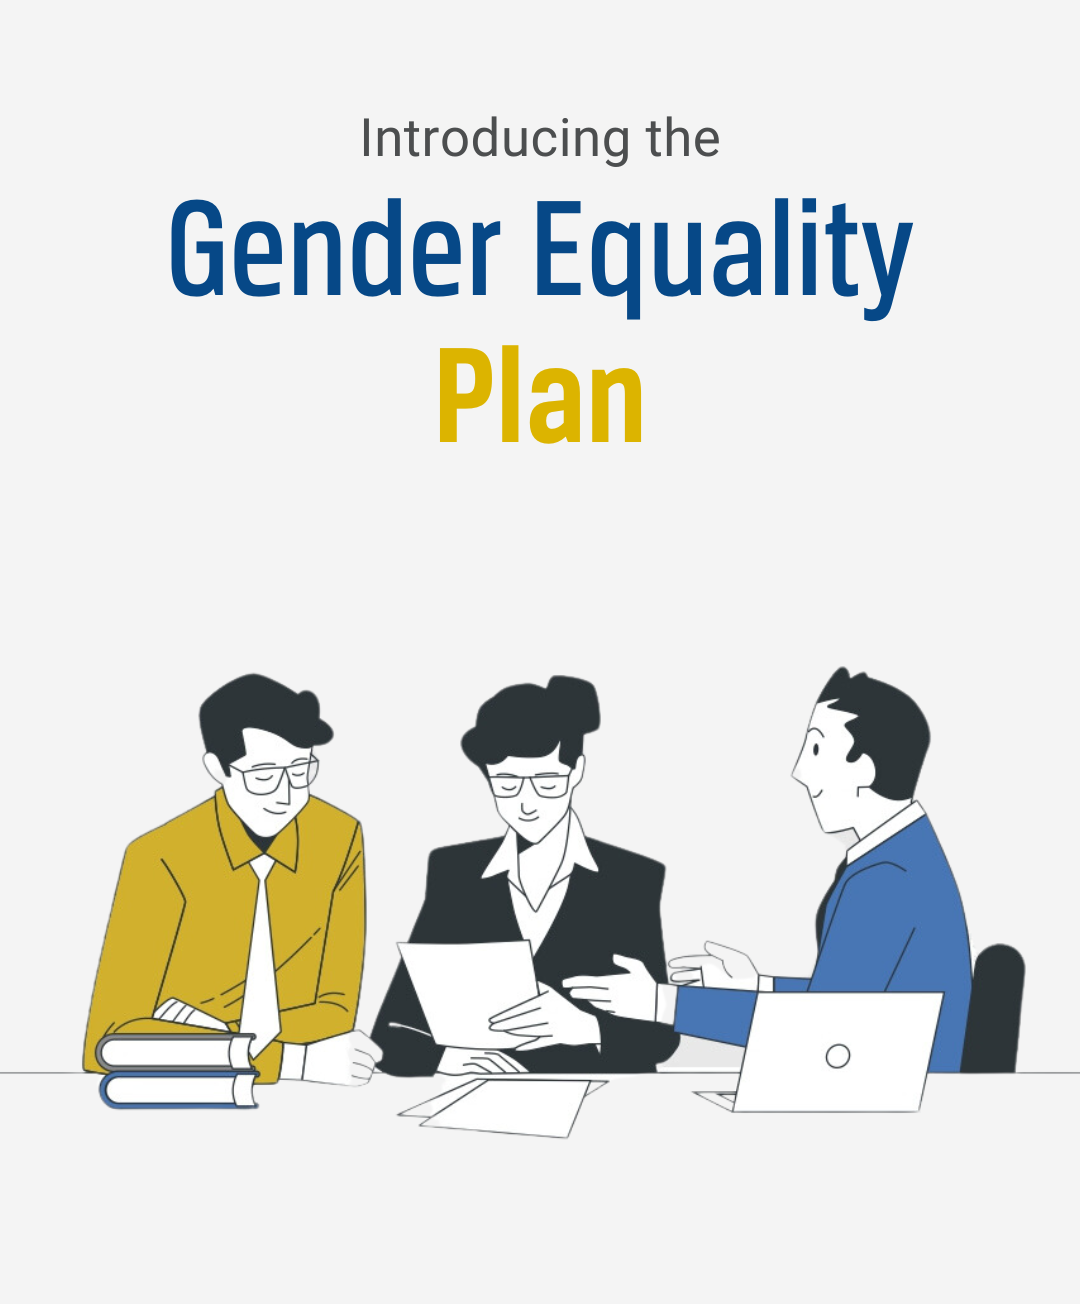 ENRS implements comprehensive Gender Equality Plan